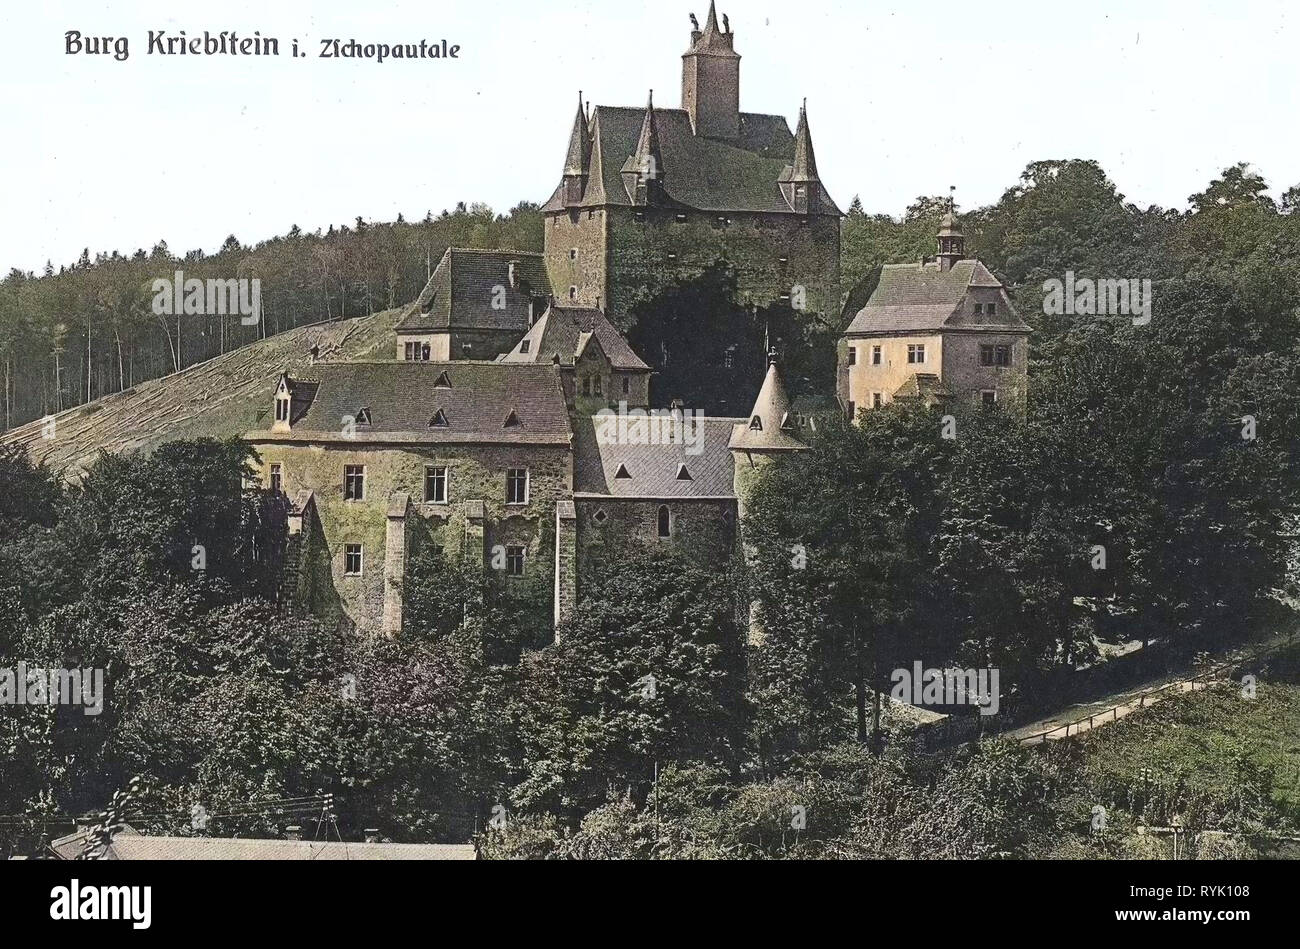 Burg Kriebstein, 1913, Landkreis Mittelsachsen, Kriebstein, Germany Stock Photo